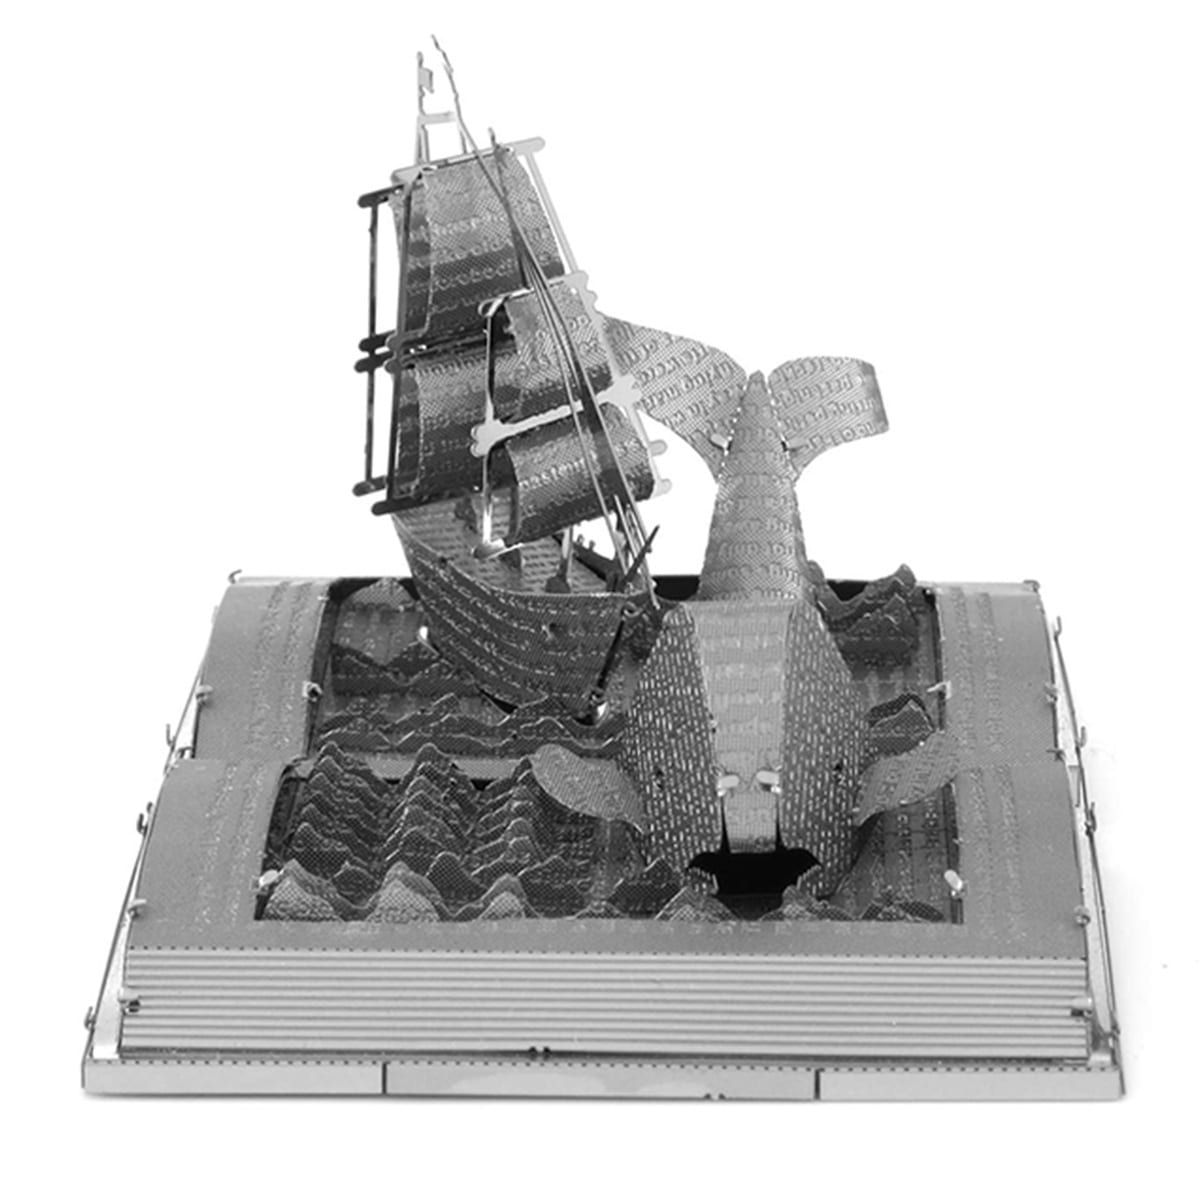  Mô Hình Kim Loại Lắp Ráp 3D Metal Head Quyển Sách Cá Voi Trắng Moby Dick – MP951 